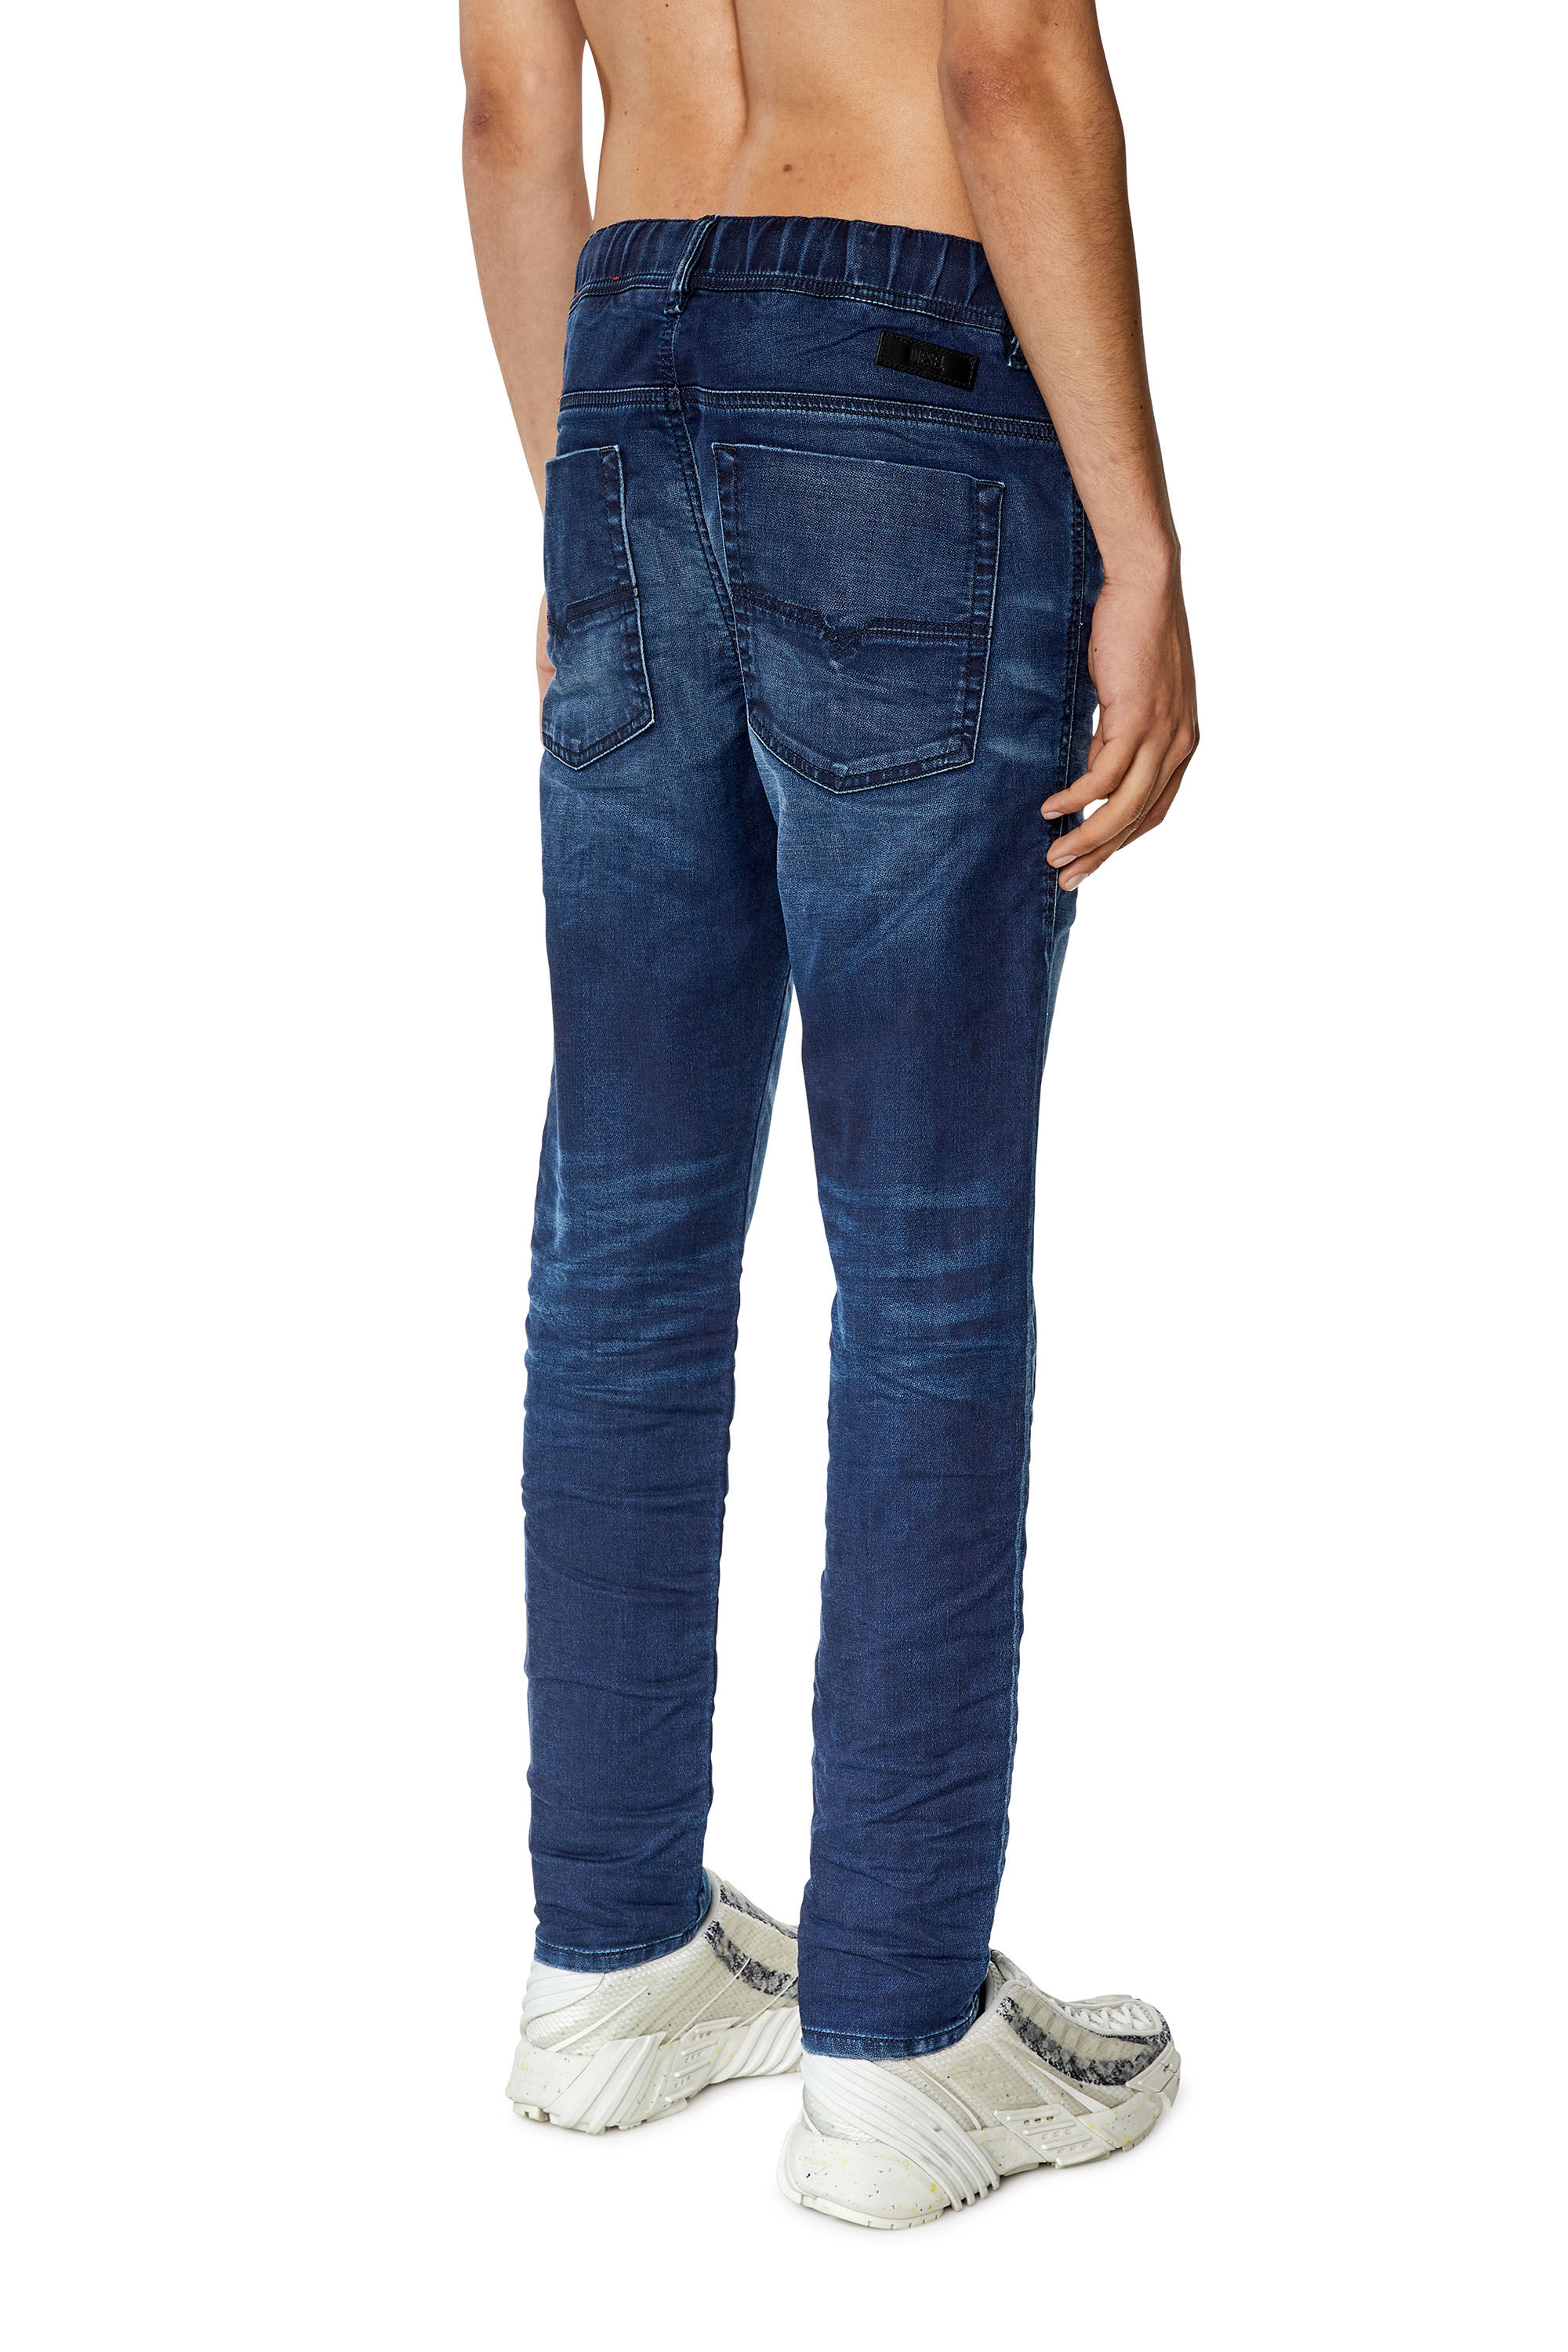 Men's Slim Jeans | Dark blue | Diesel E-Spender JoggJeans®